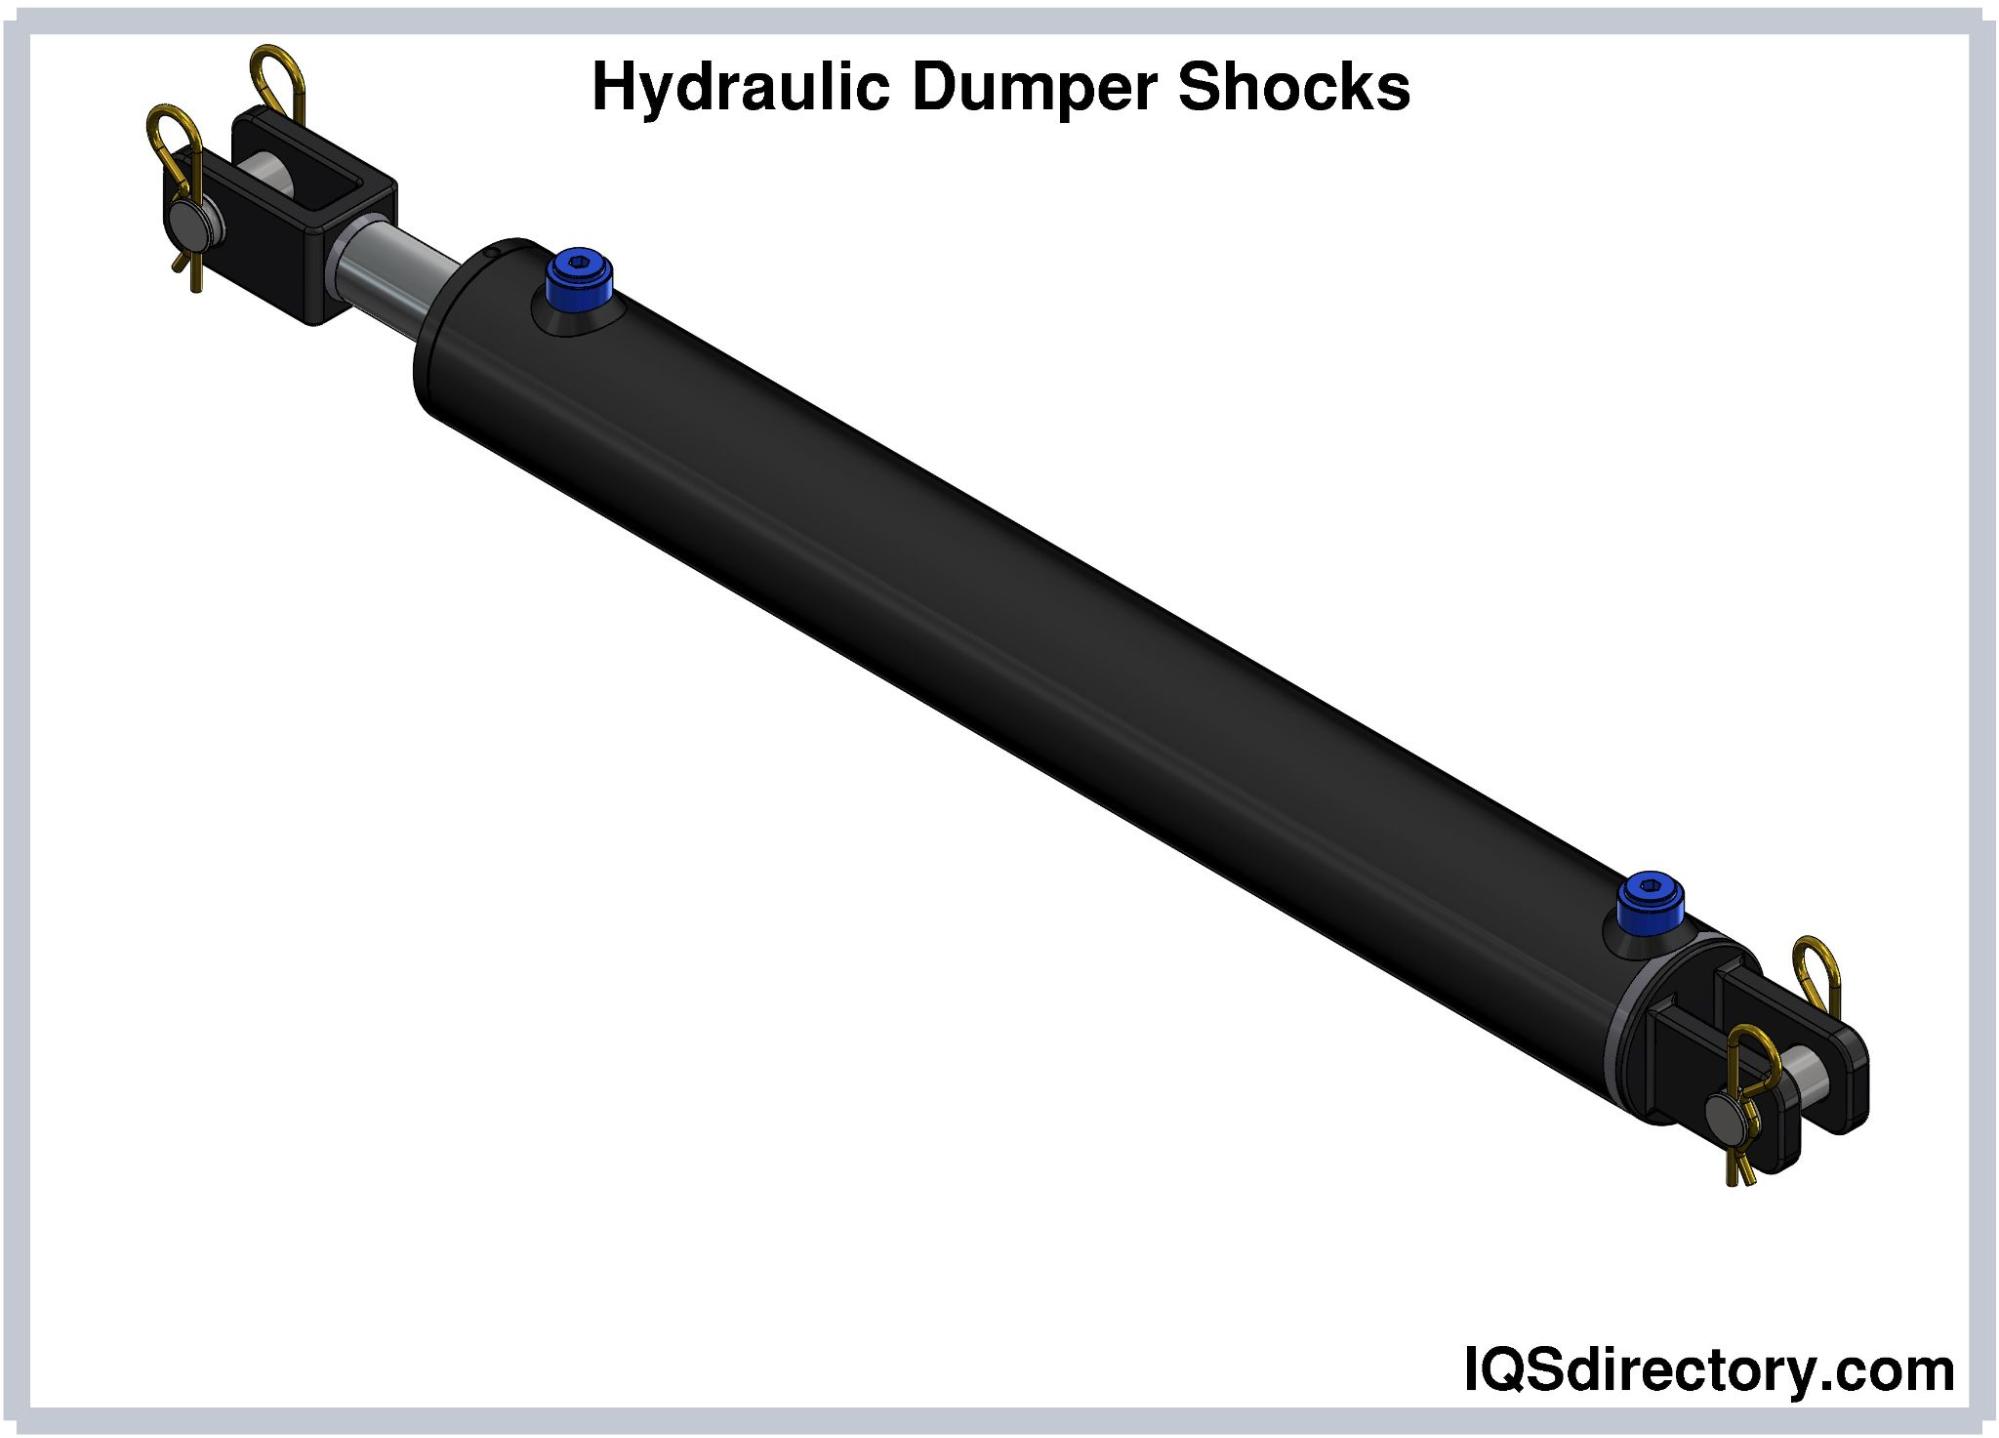 Hydraulic Dumper Shocks